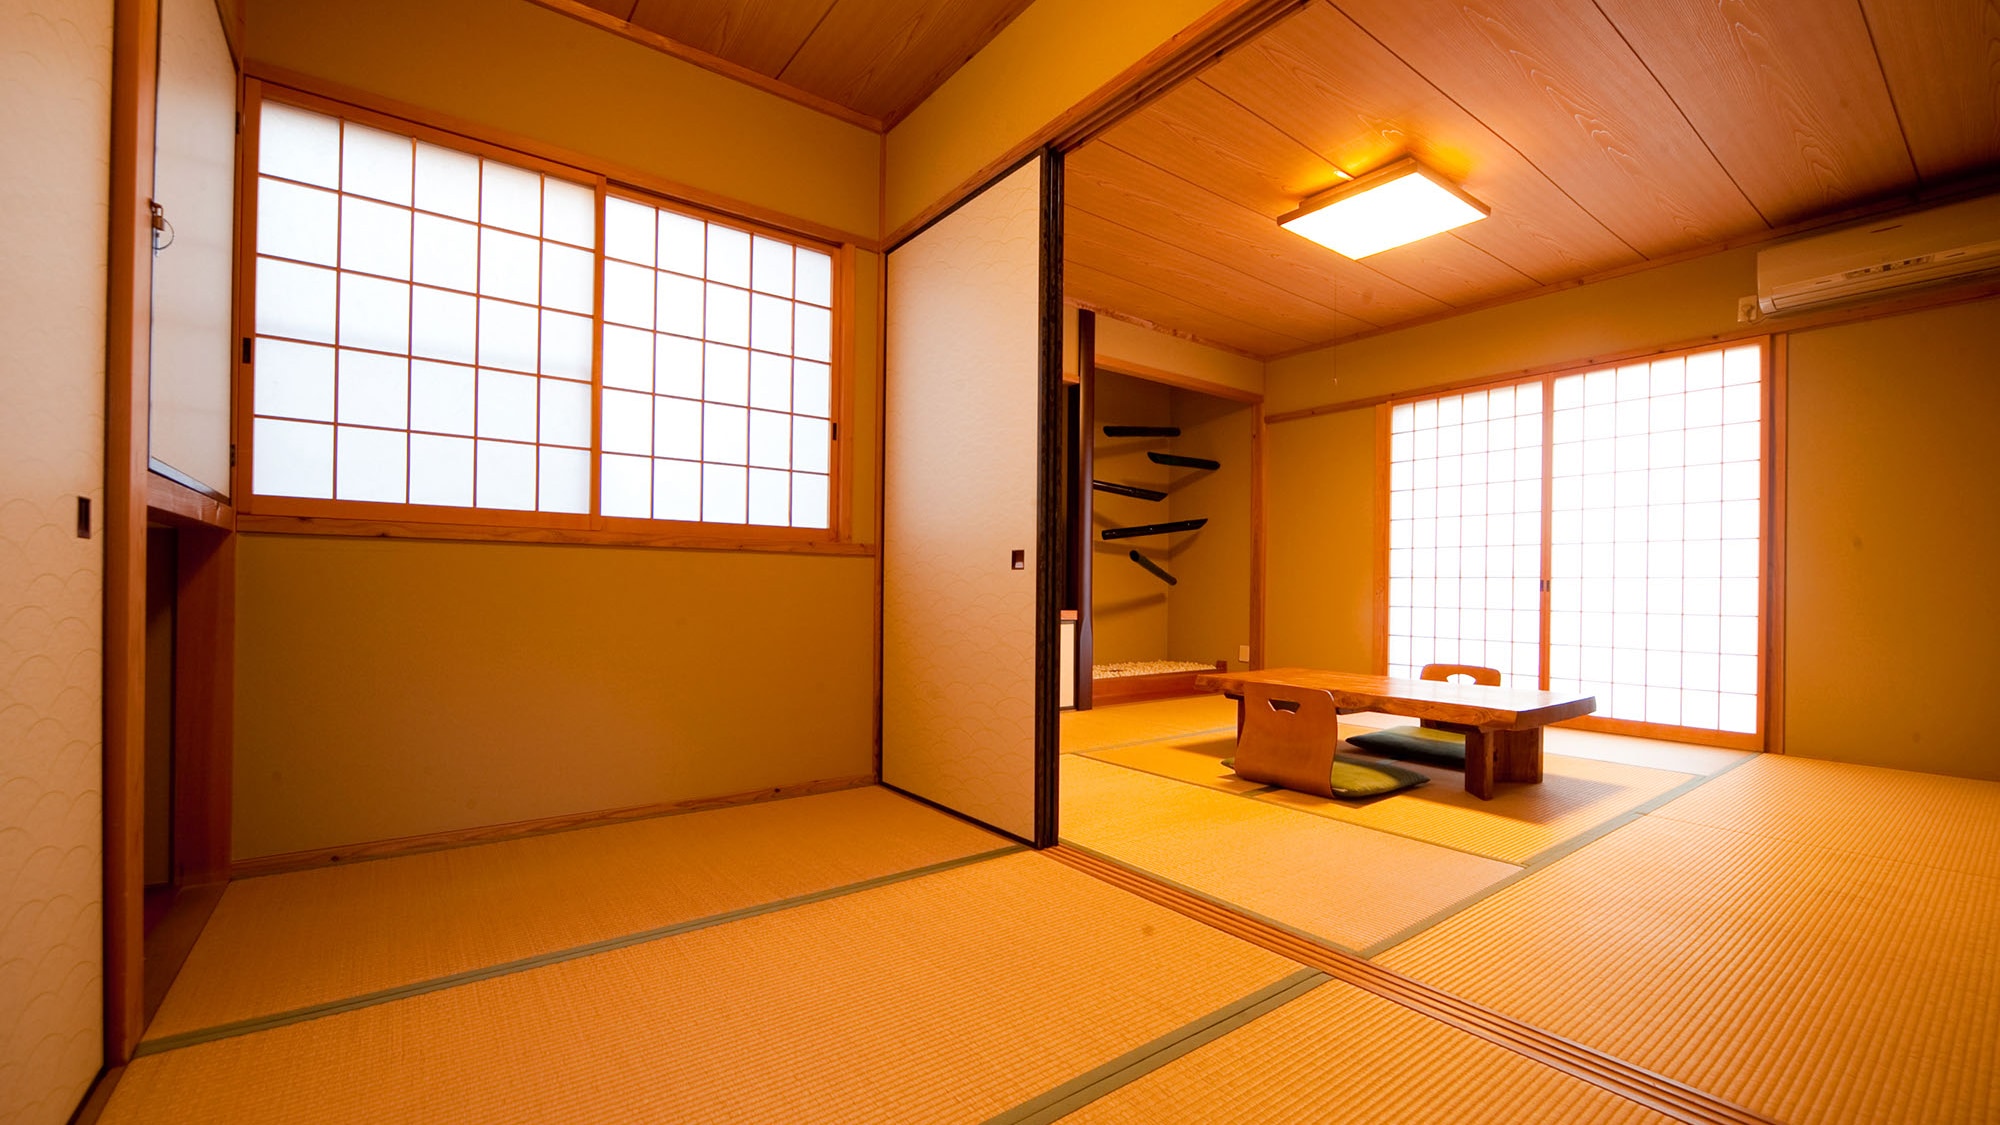 일본식 객실 내 욕실이있는 객실